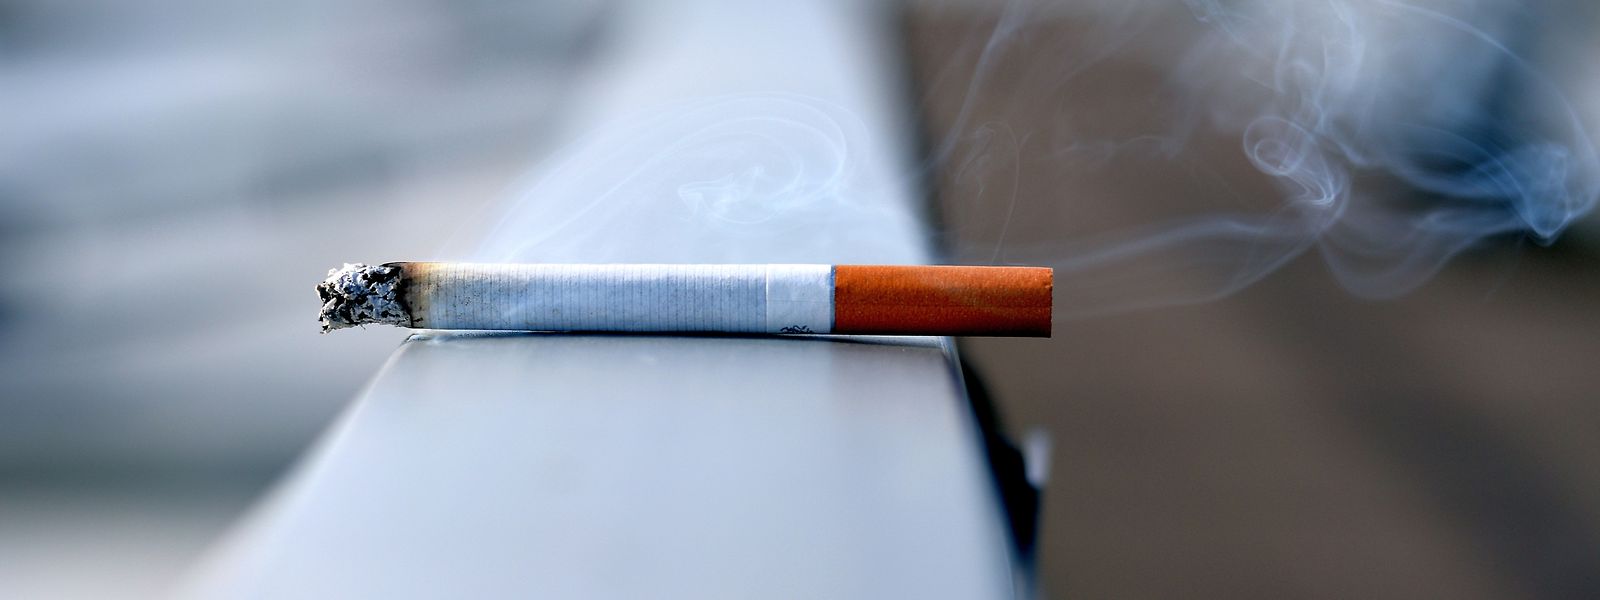 Pelo terceiro ano consecutivo, o tabagismo aumentou no país.